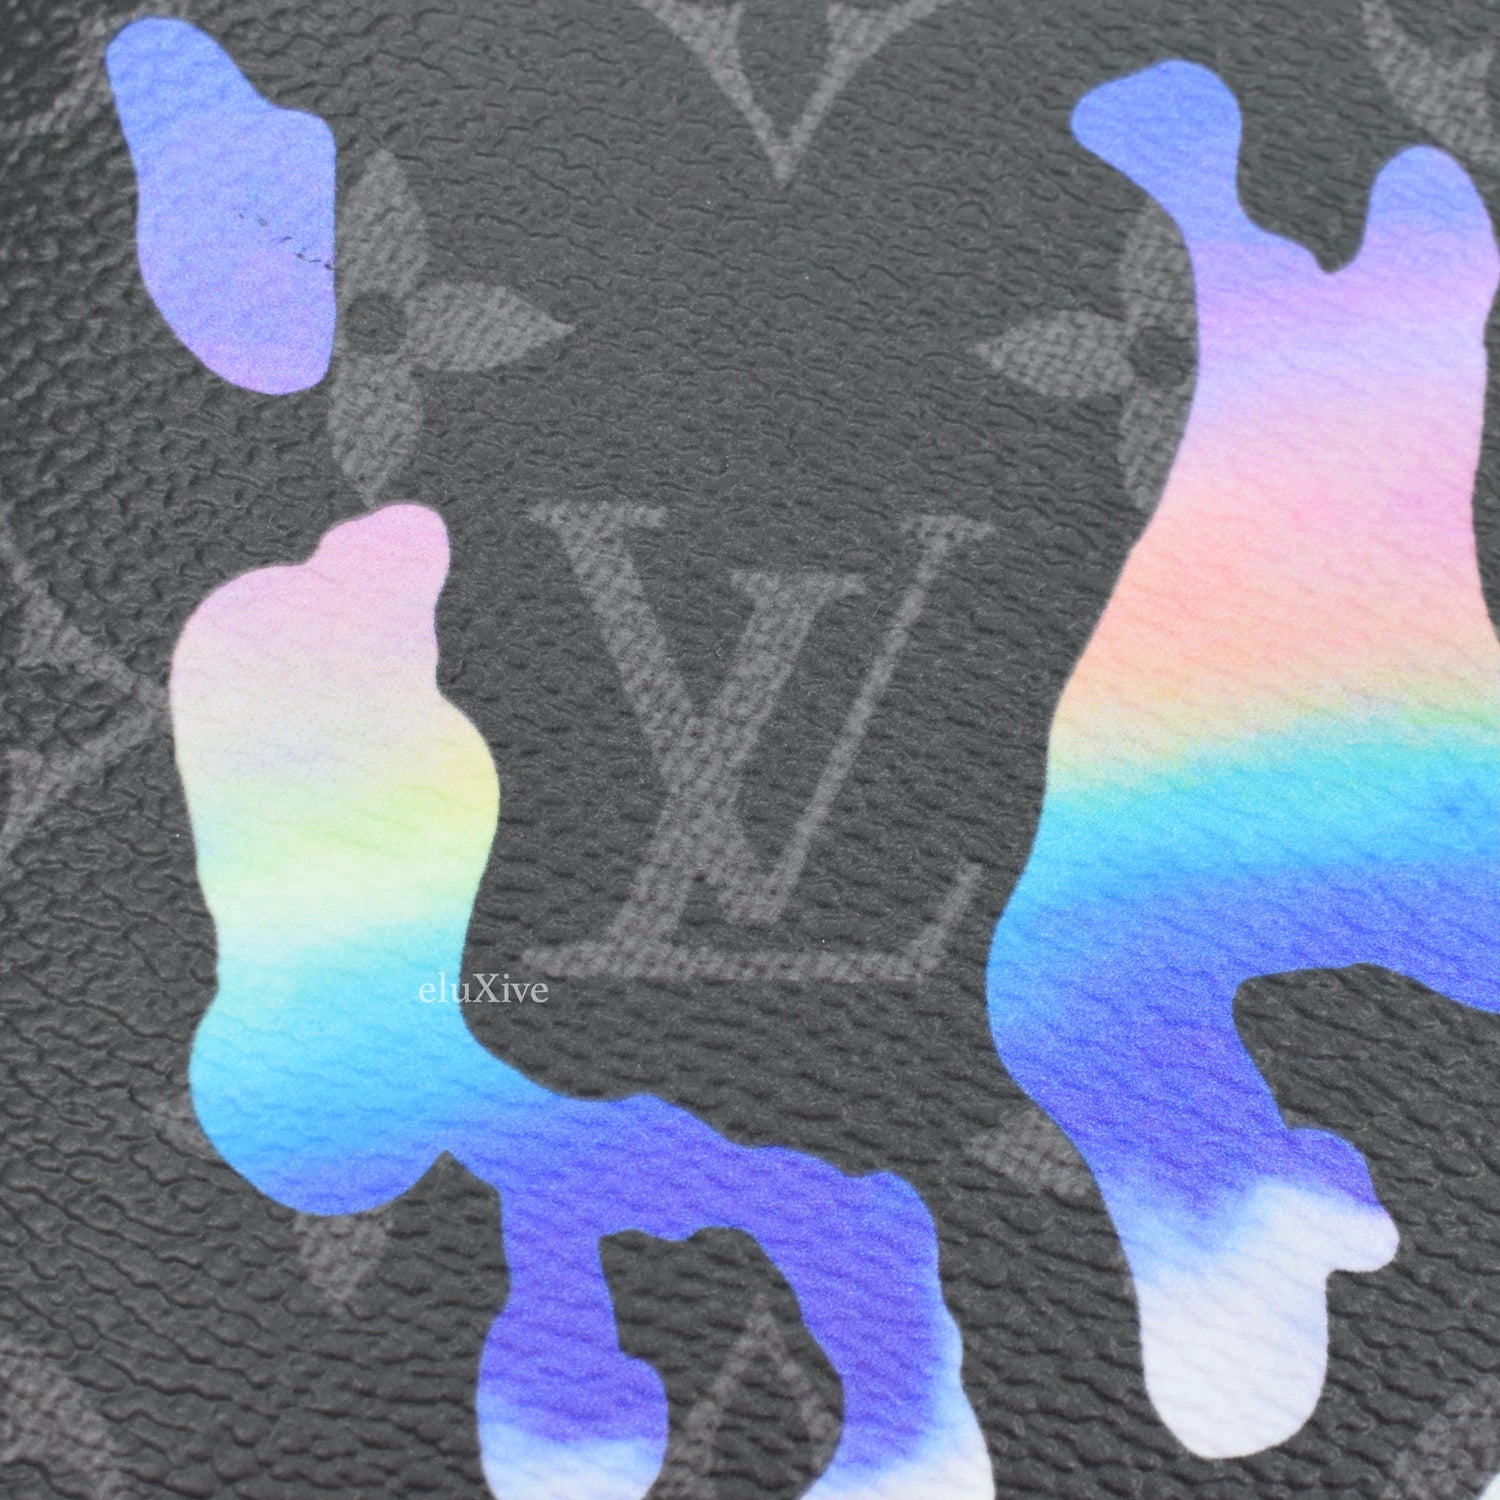 Louis Vuitton Black Leather Monogram Spotlight Multiple Wallet Men's 3LV517S